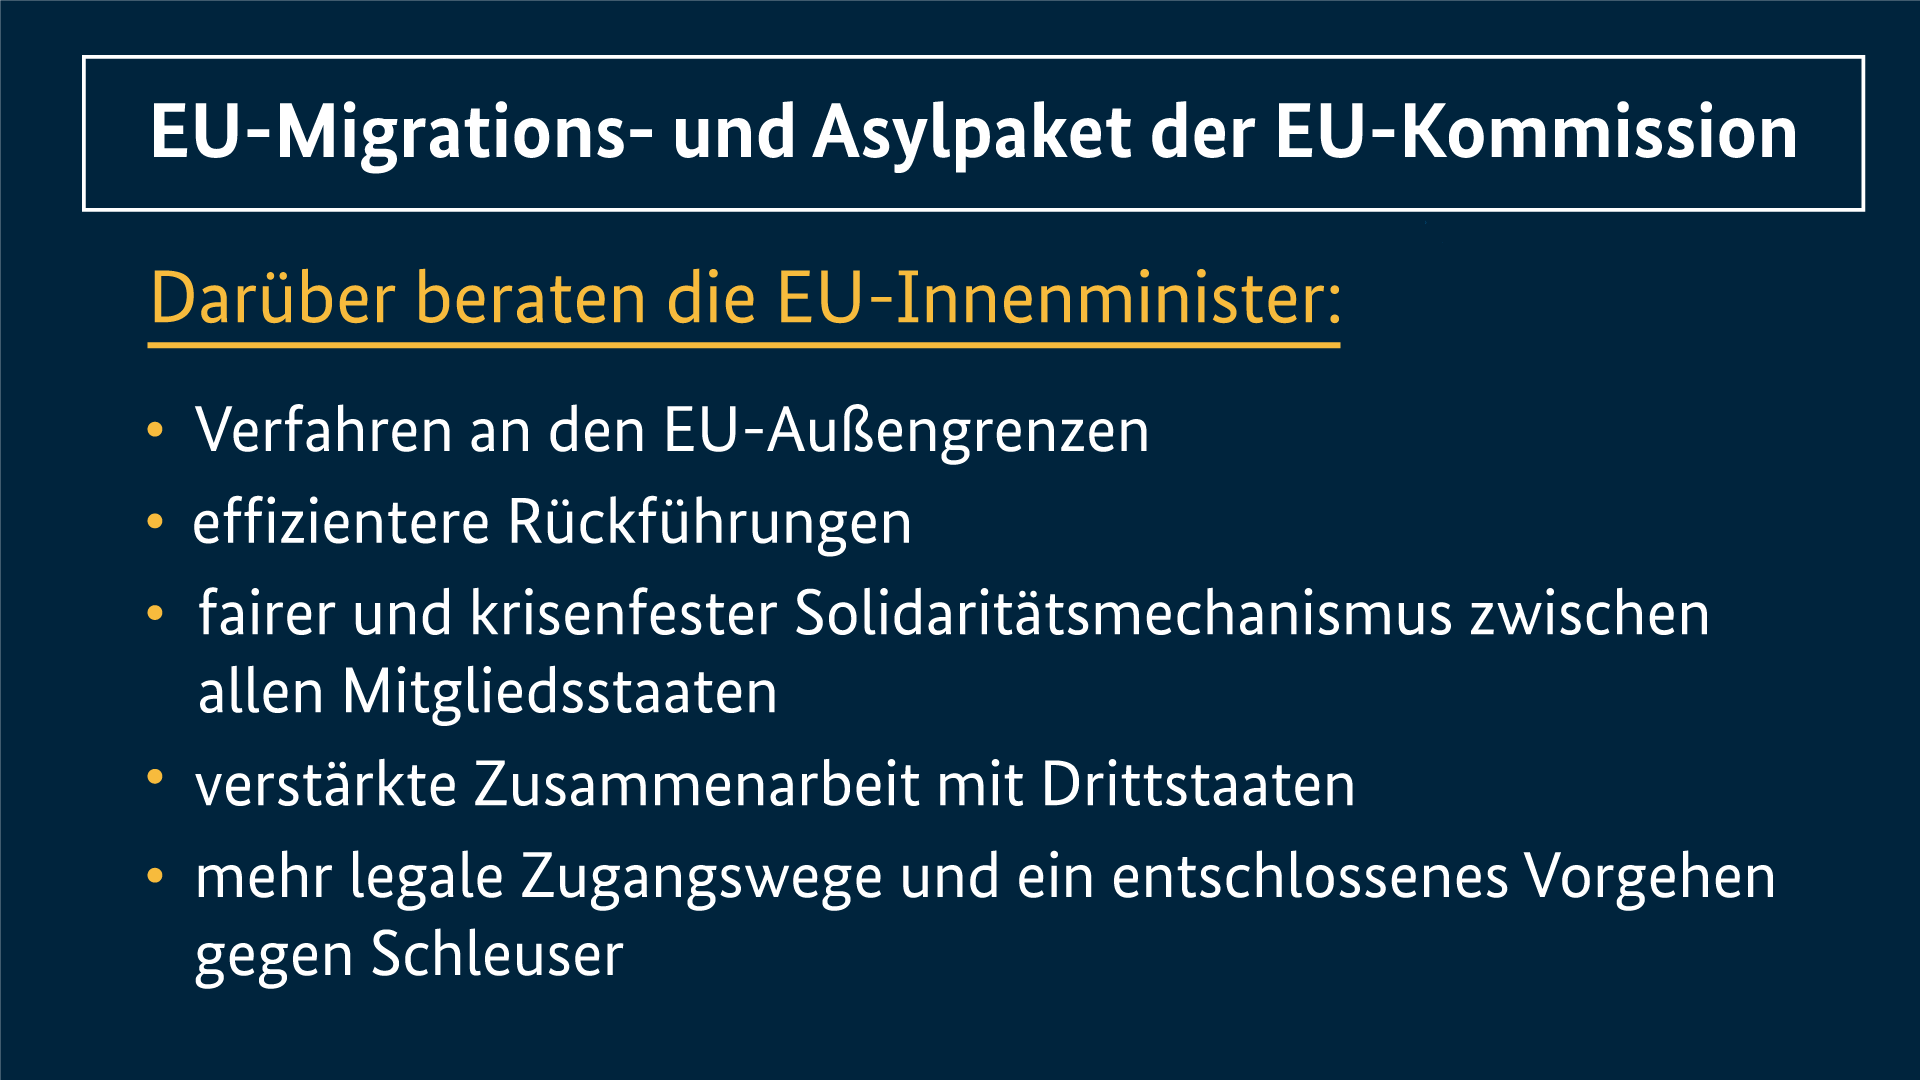 Grafik zum EU-Migrations- und Asylpaket der EU-Kommission